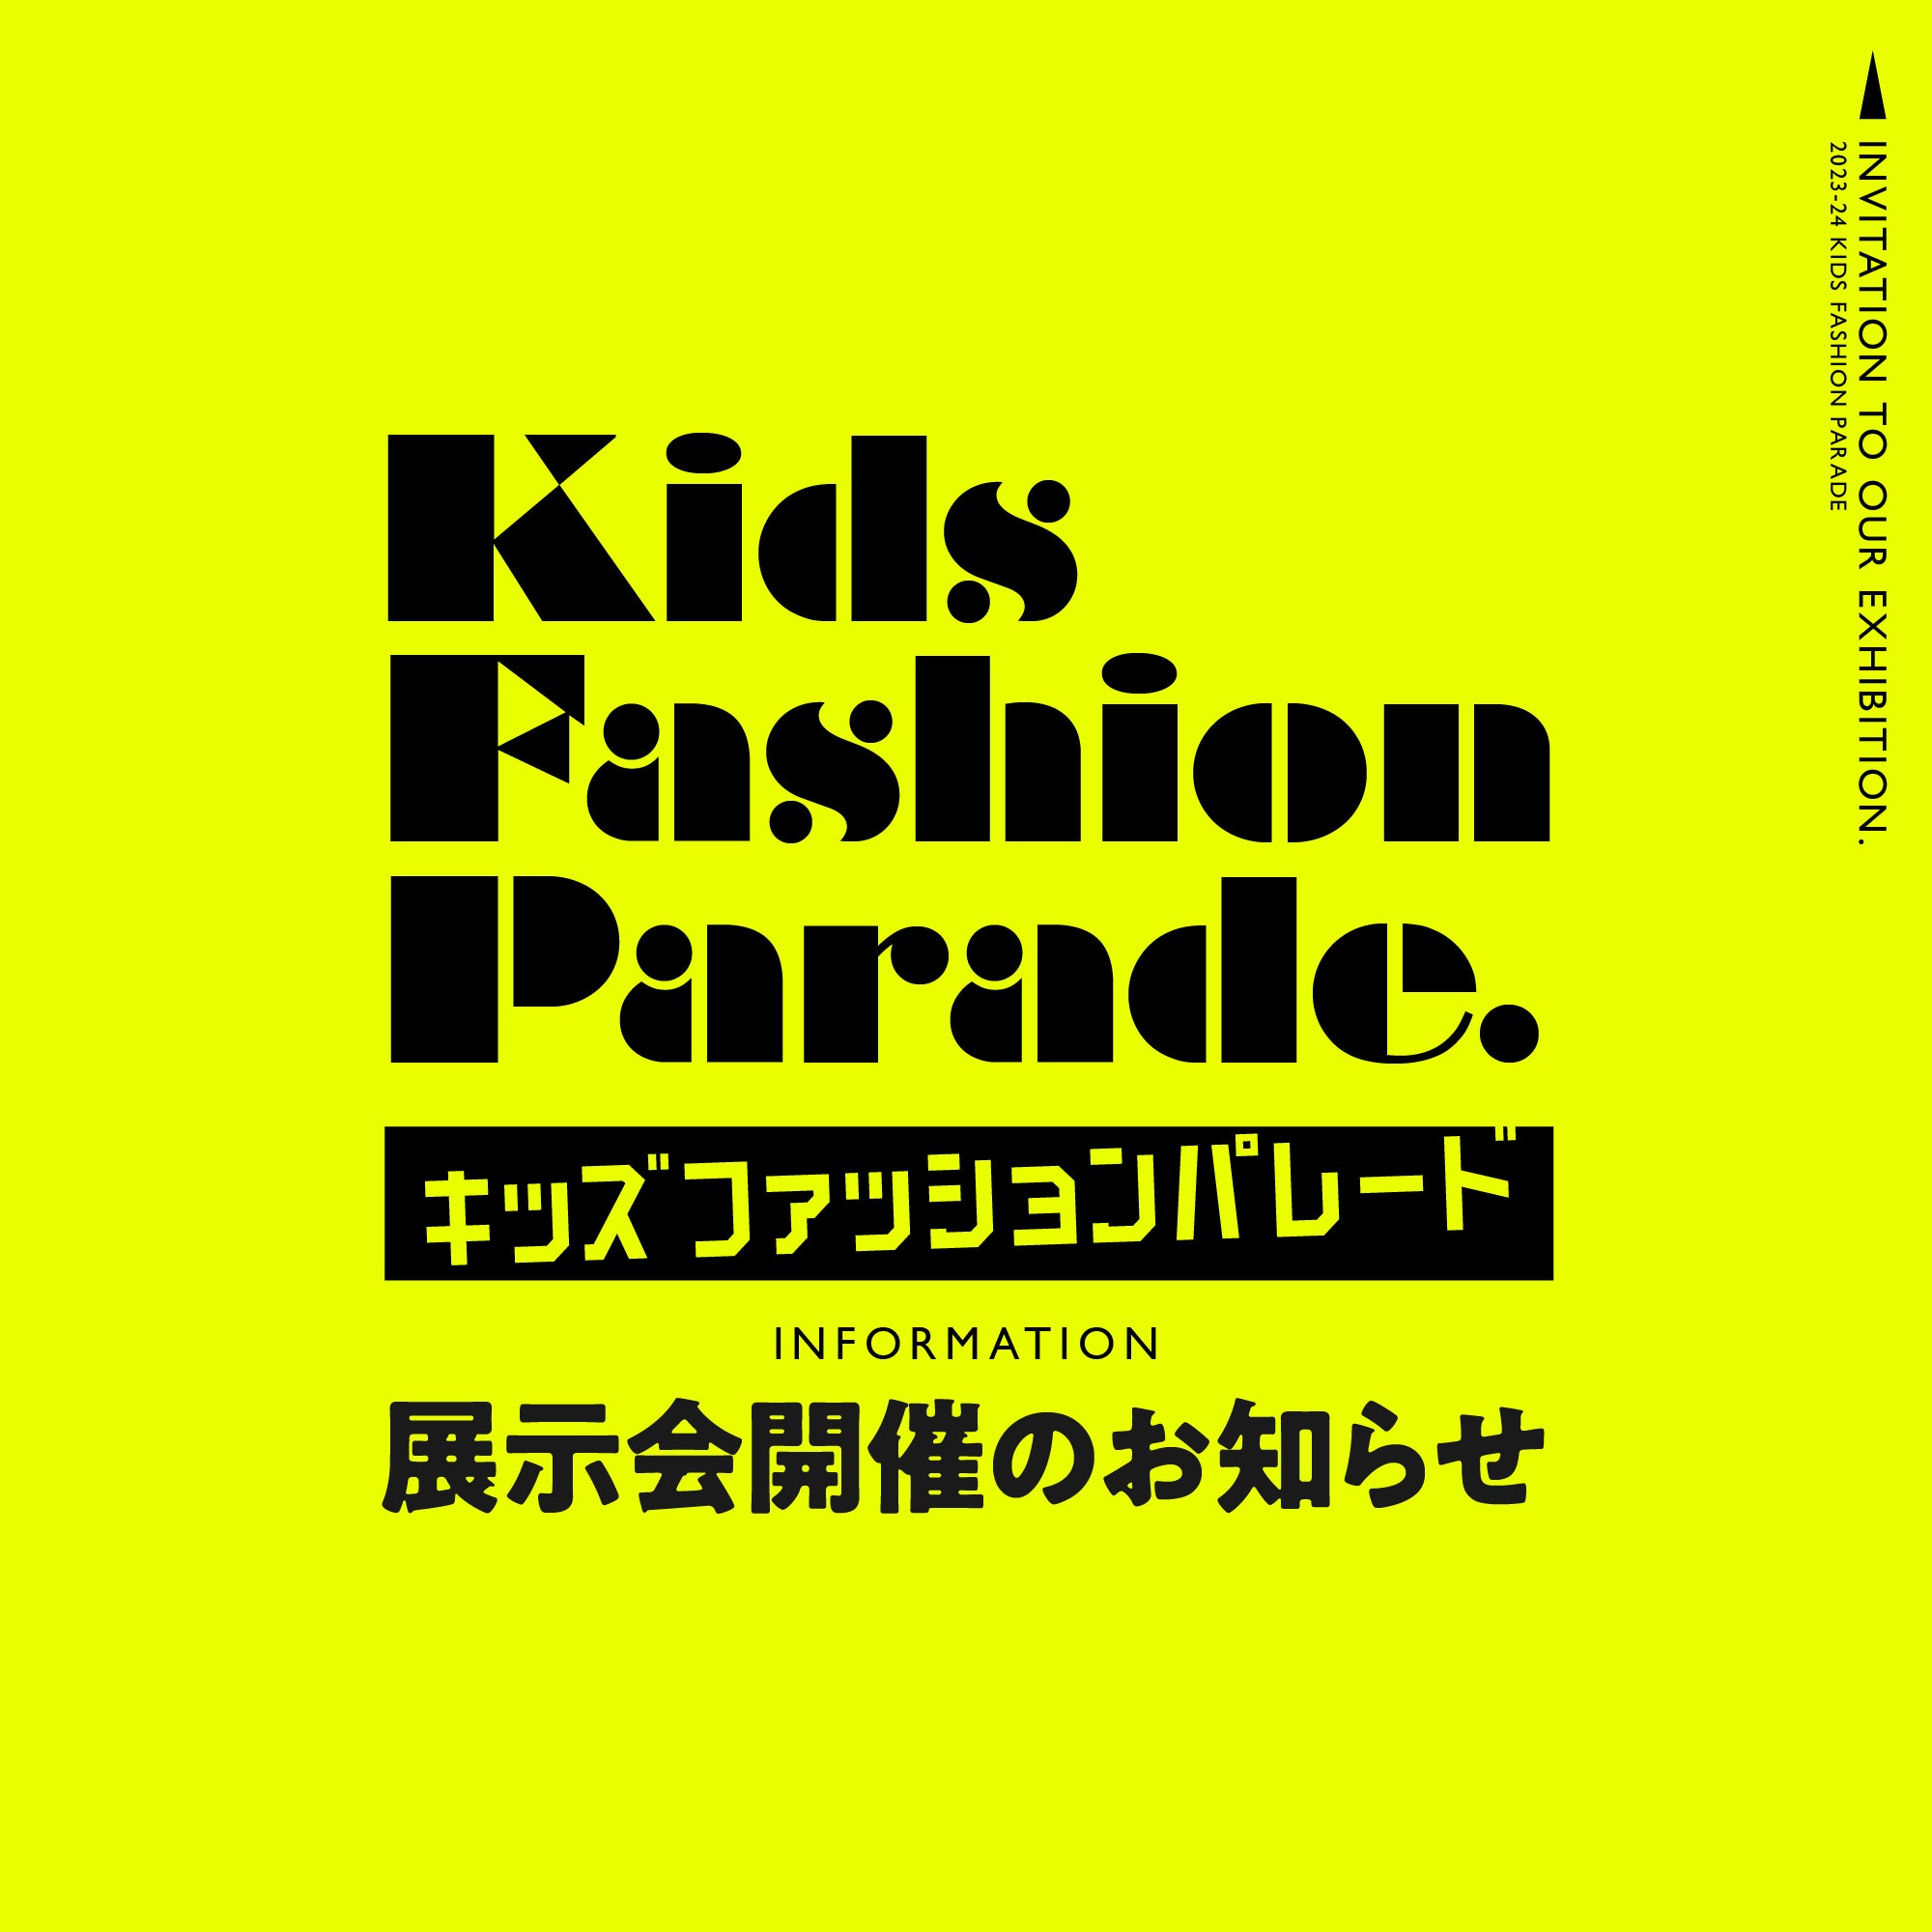 キッズファッションパレード京都展に参加します